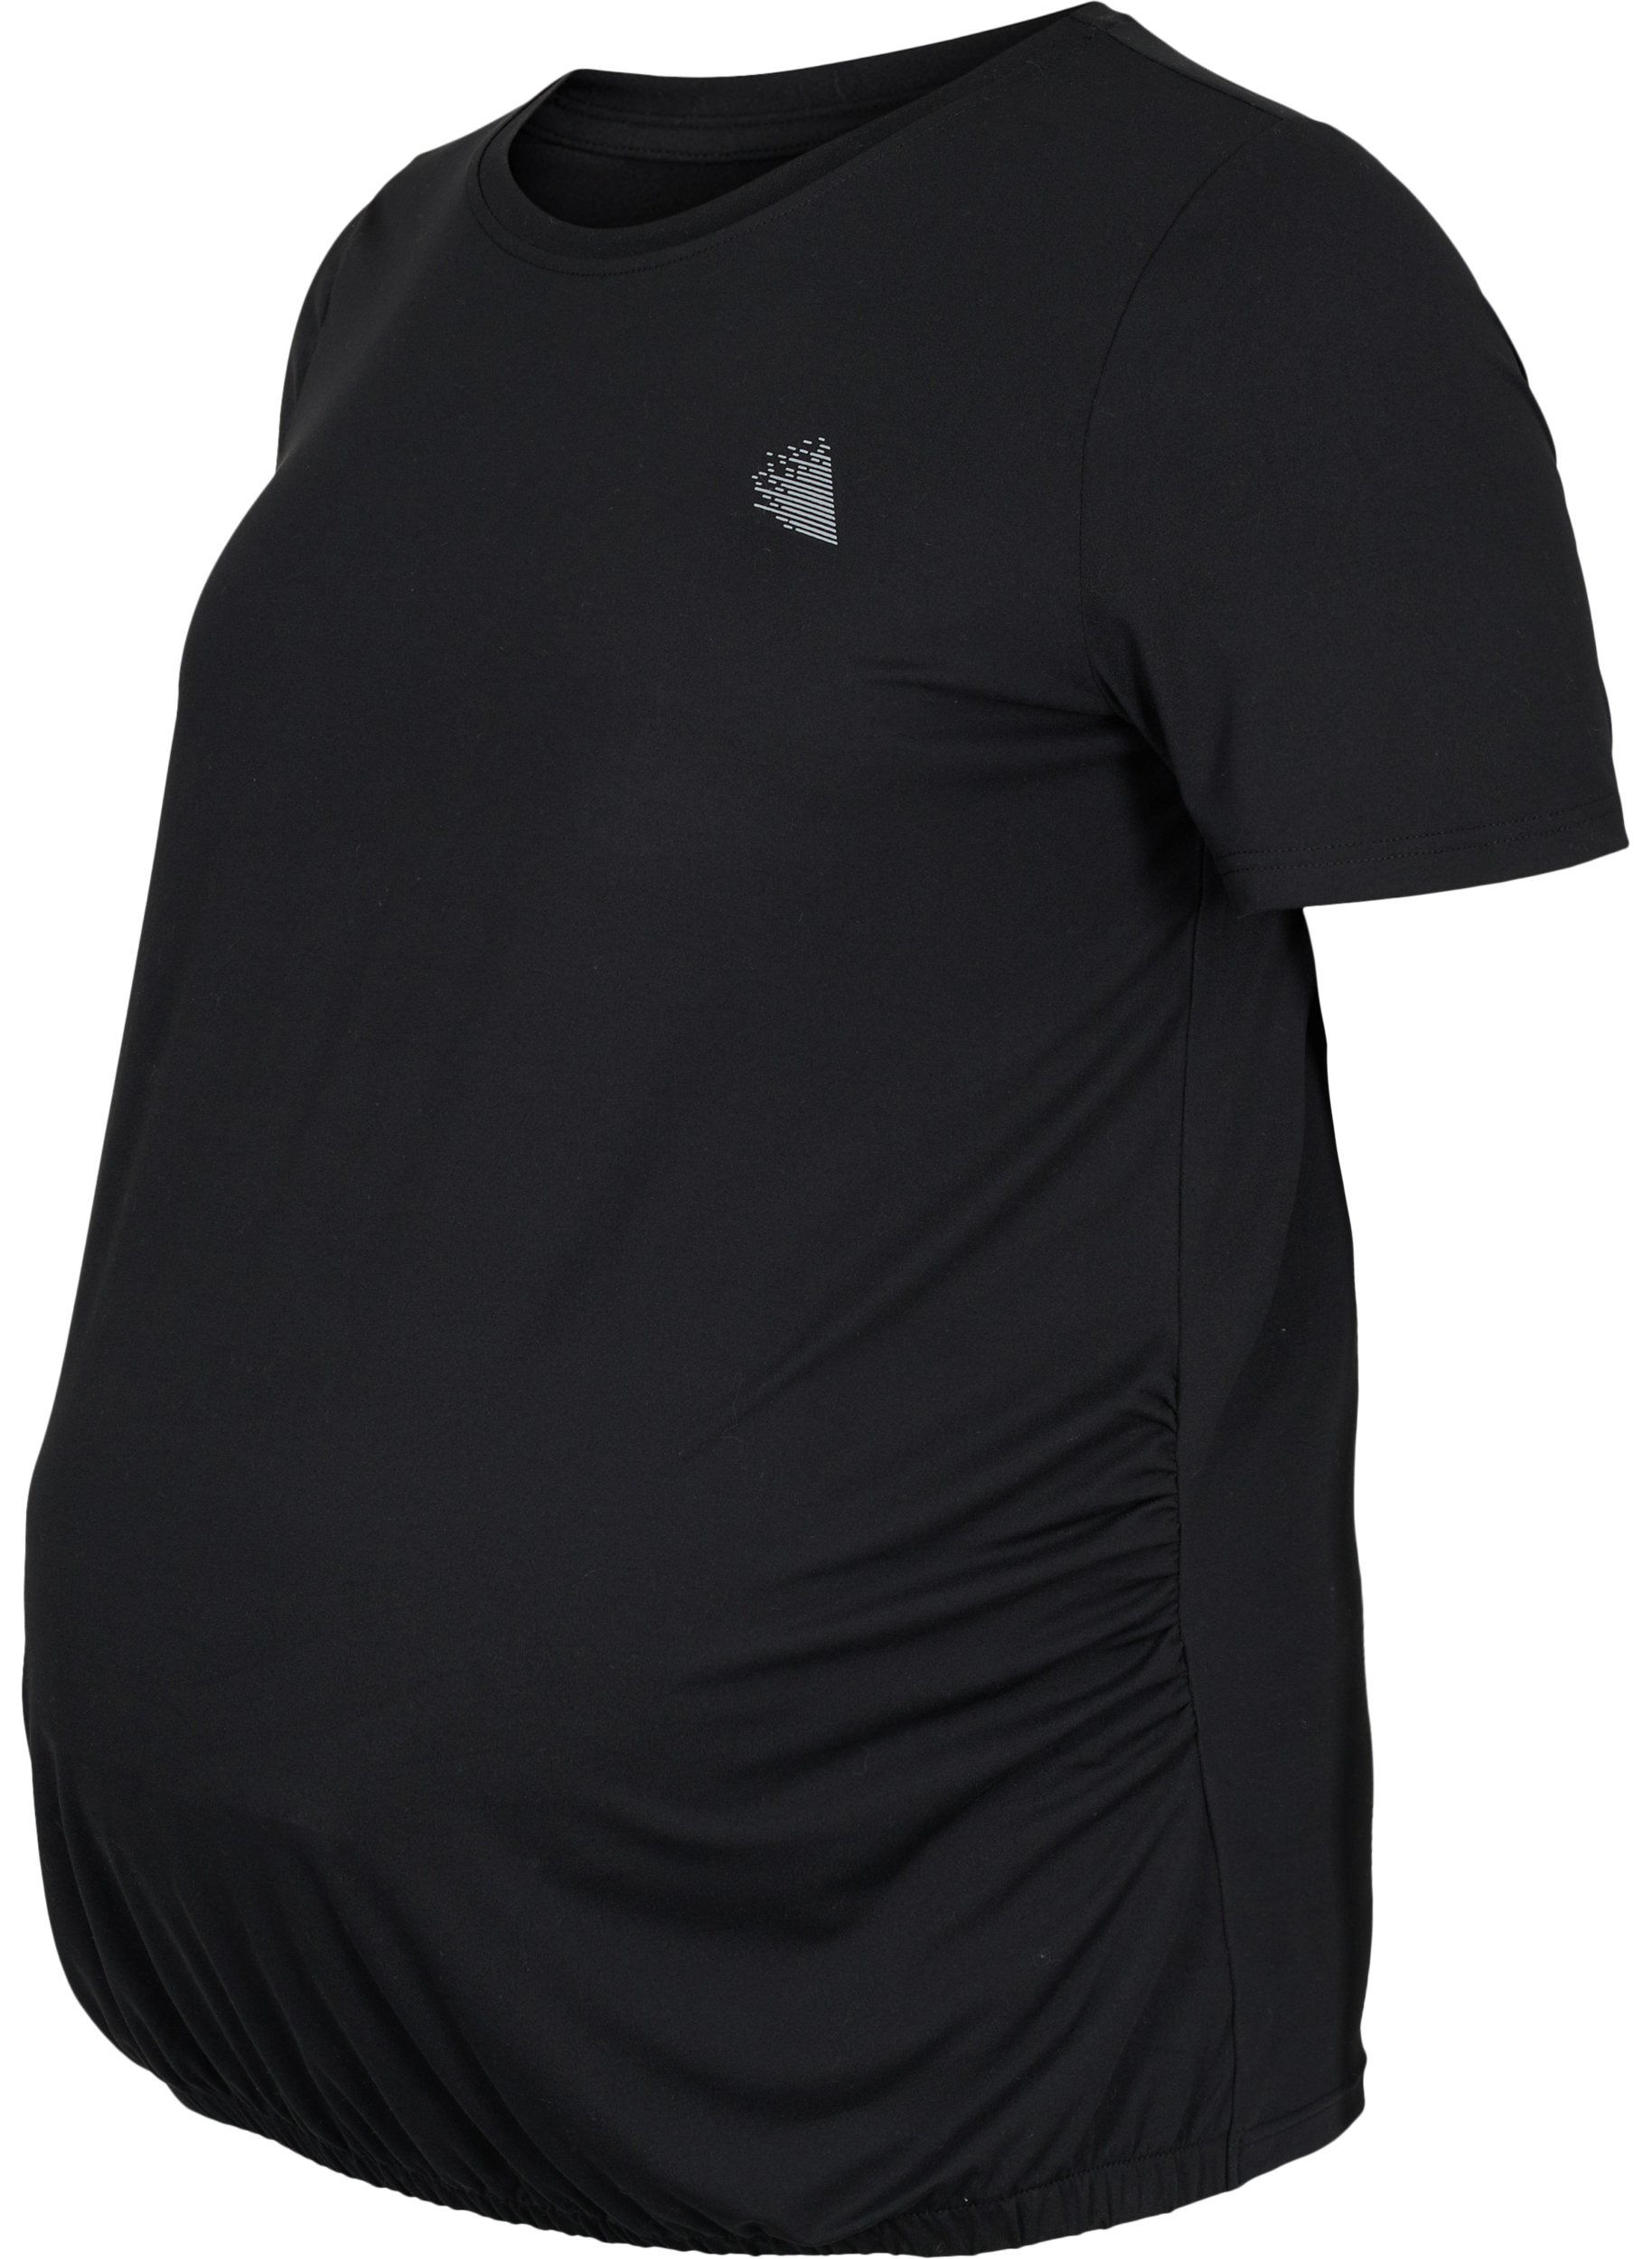 Schwagnerschafts-Trainings-T-Shirt, Black